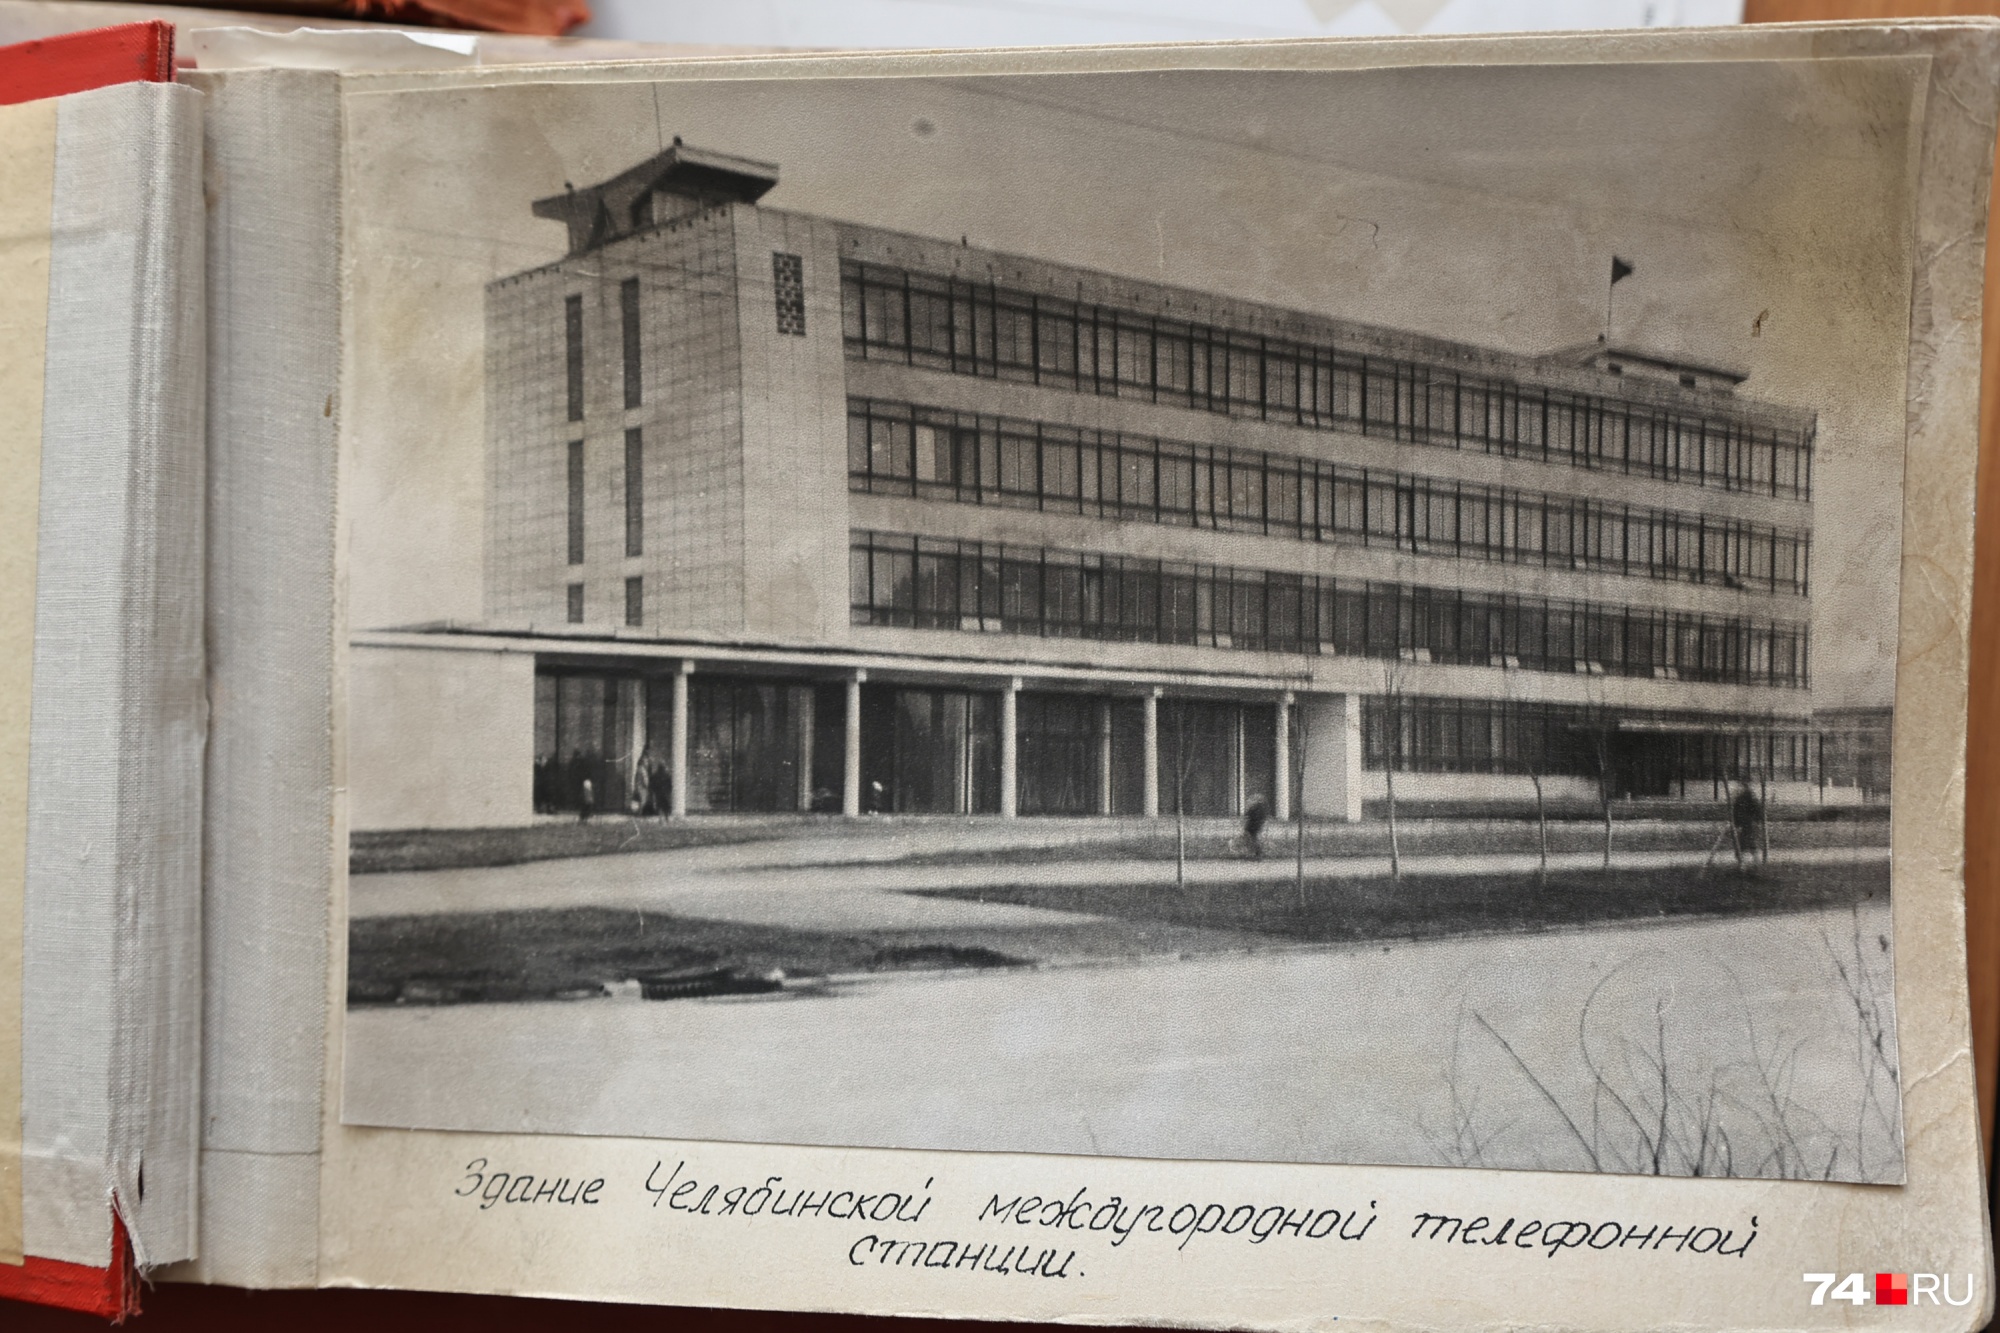 Вот так выглядело здание междугородней телефонной станции на Воровского, когда Надежда только устроилась на работу. Не было ни вышки рядом, ни забора вокруг